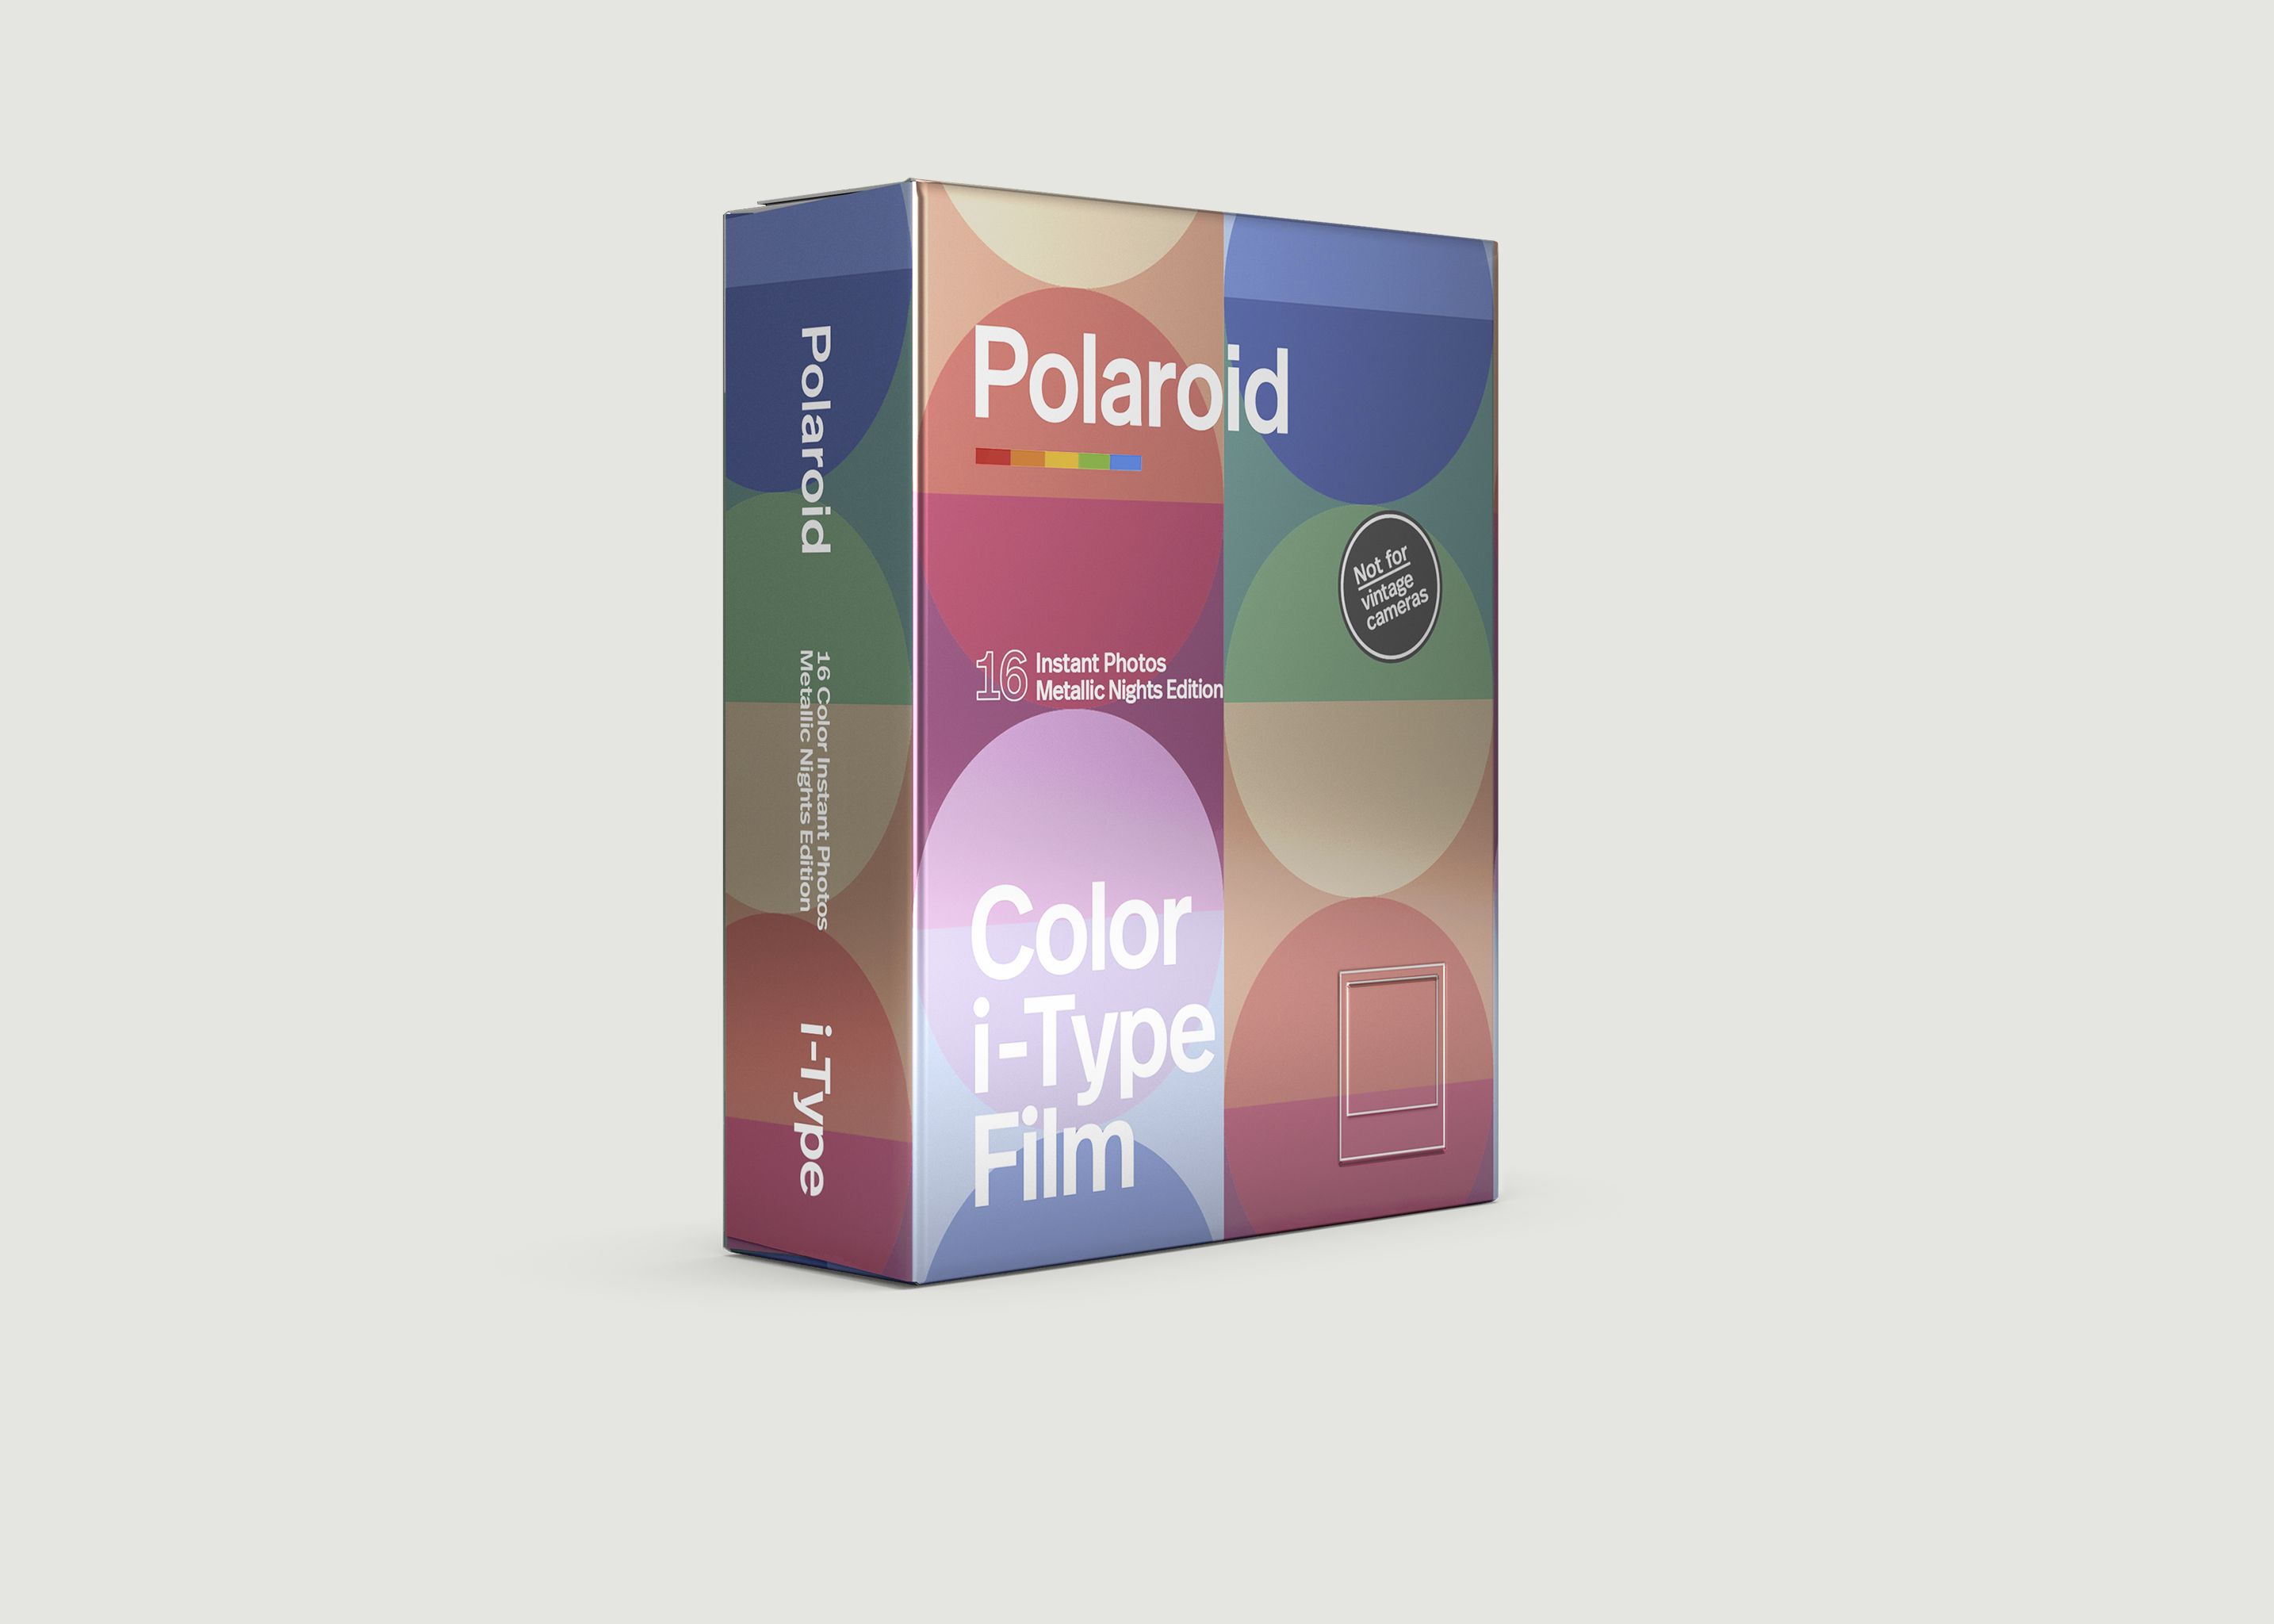 I-Type Film - MetallicNights Doppelpack - Polaroid Originals